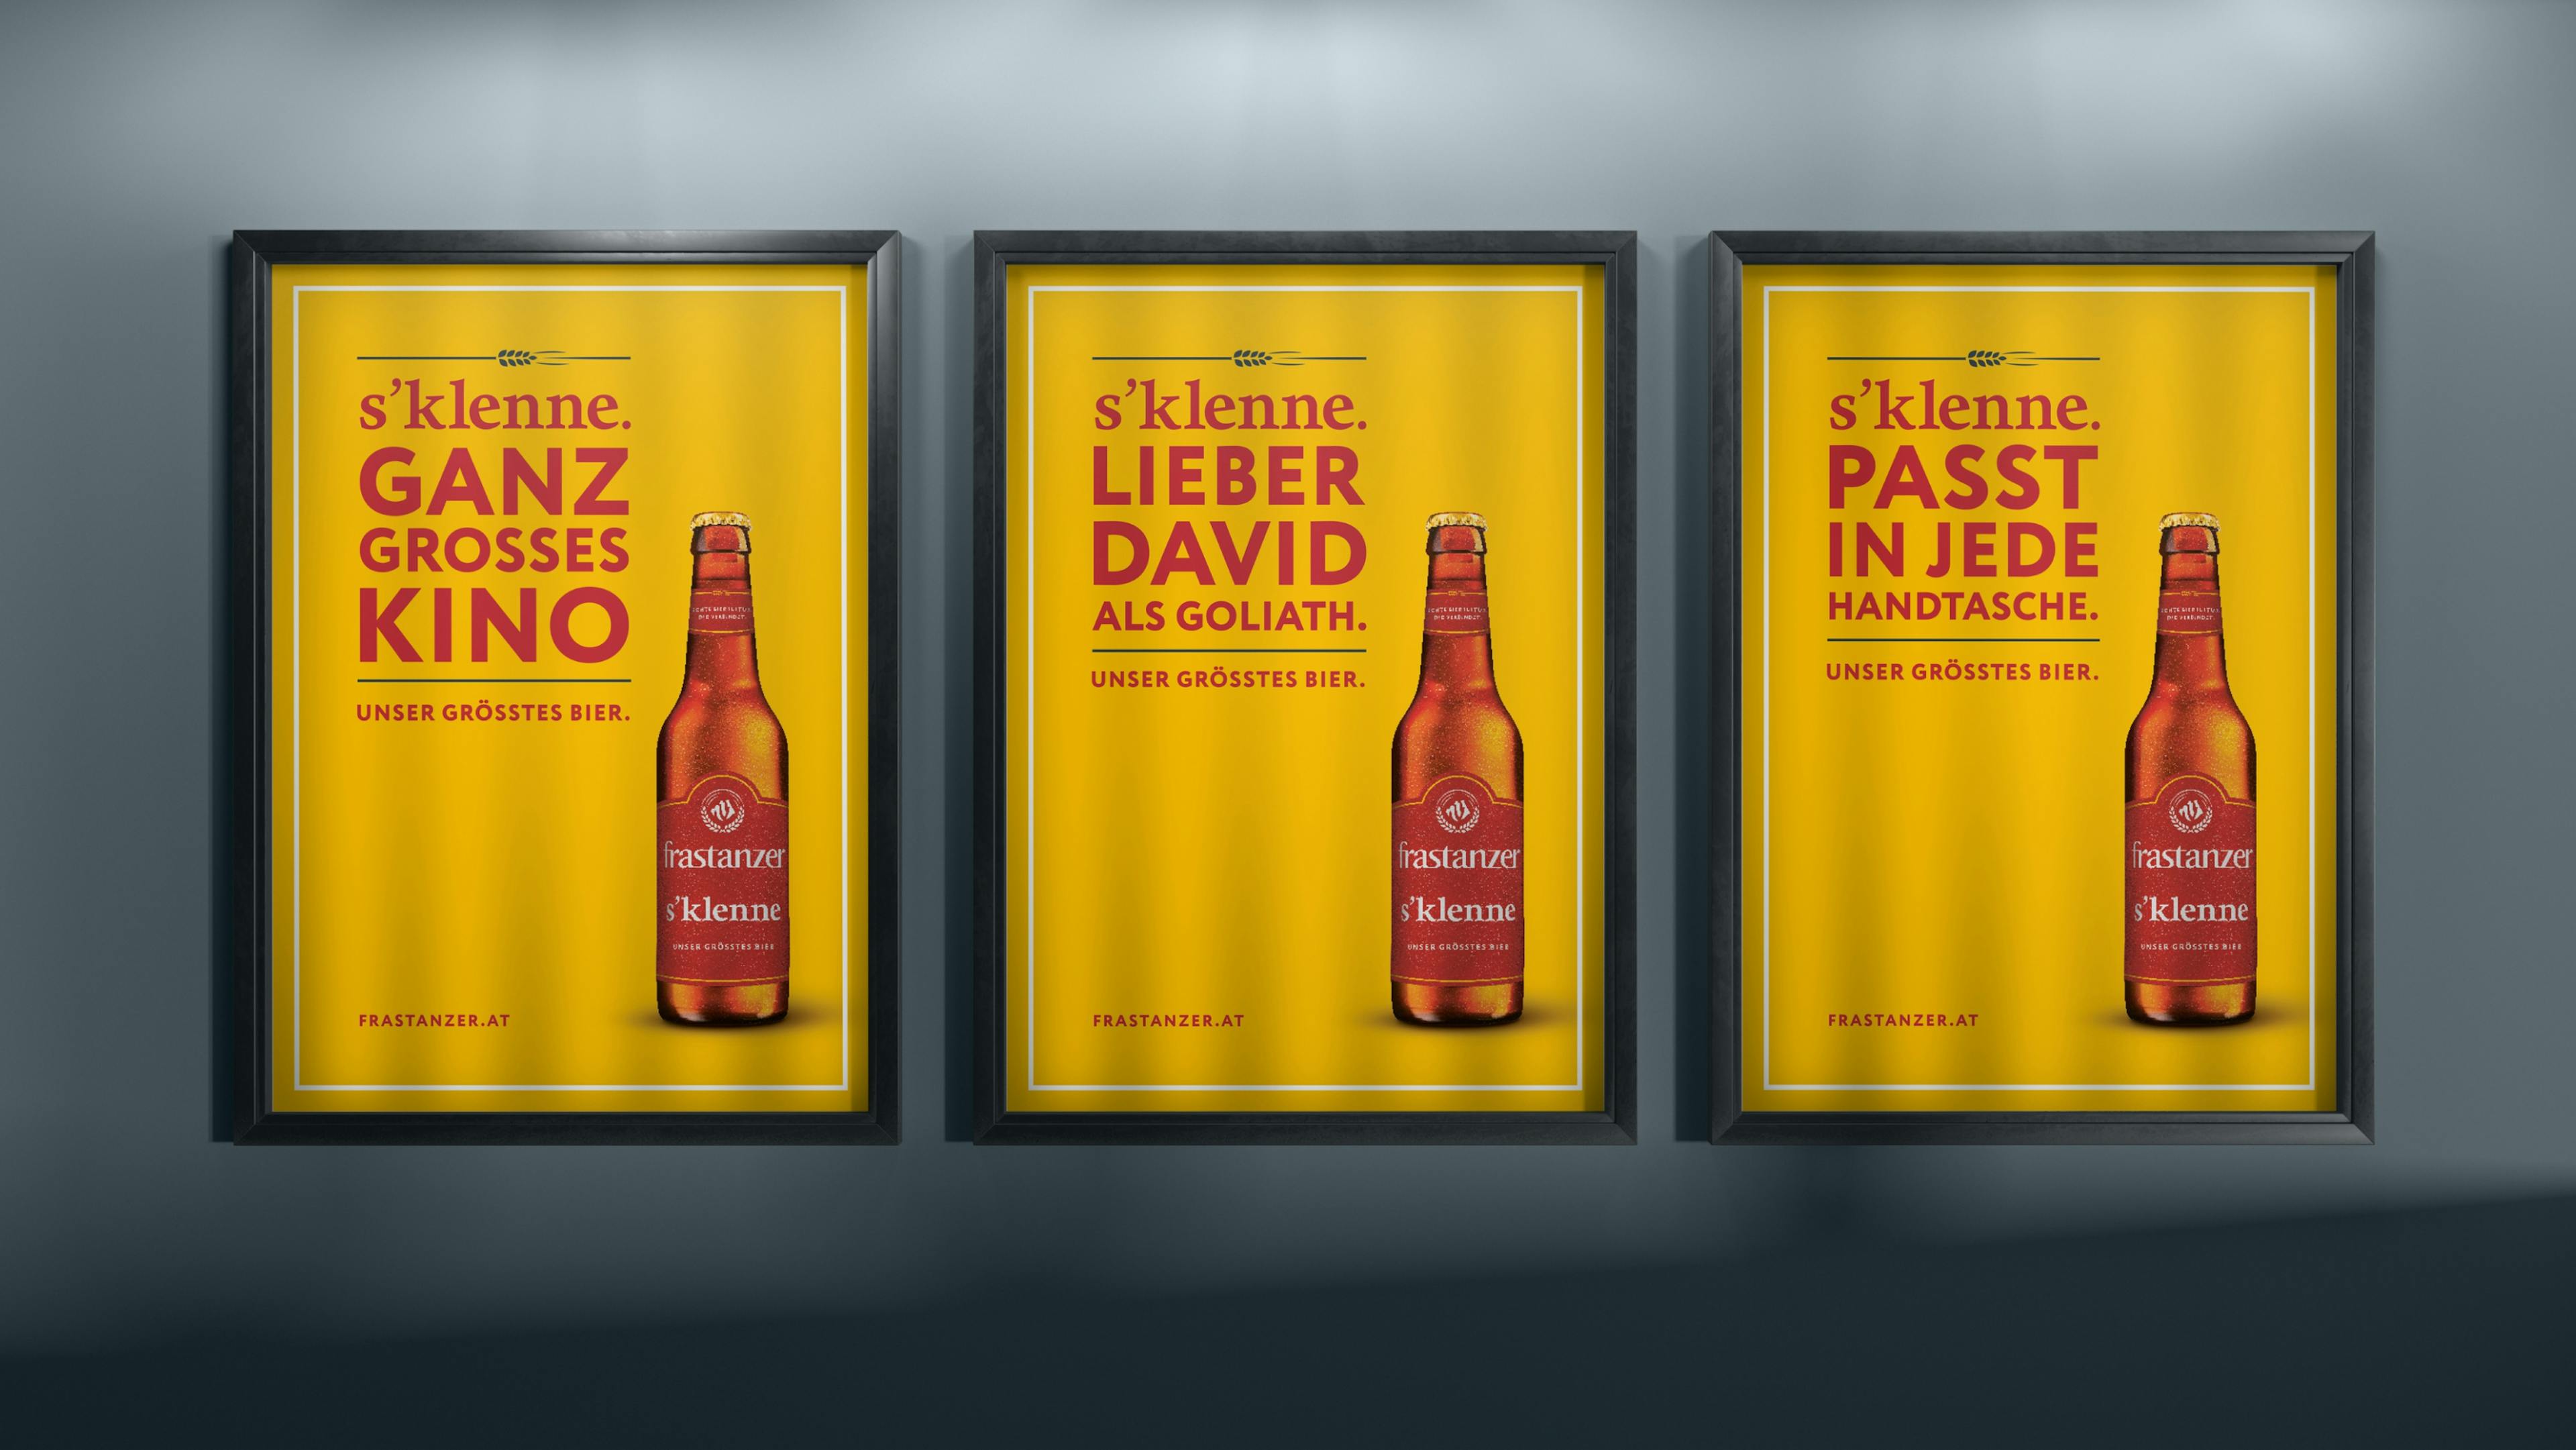 Drei Frastanzer Plakate nebeneinander. Auf jedem gelben Plakat ist eine Bierflasche mit dem Text: s'klenne. Passt in jede Handtasche. Unser größtes Bier. © gobiq